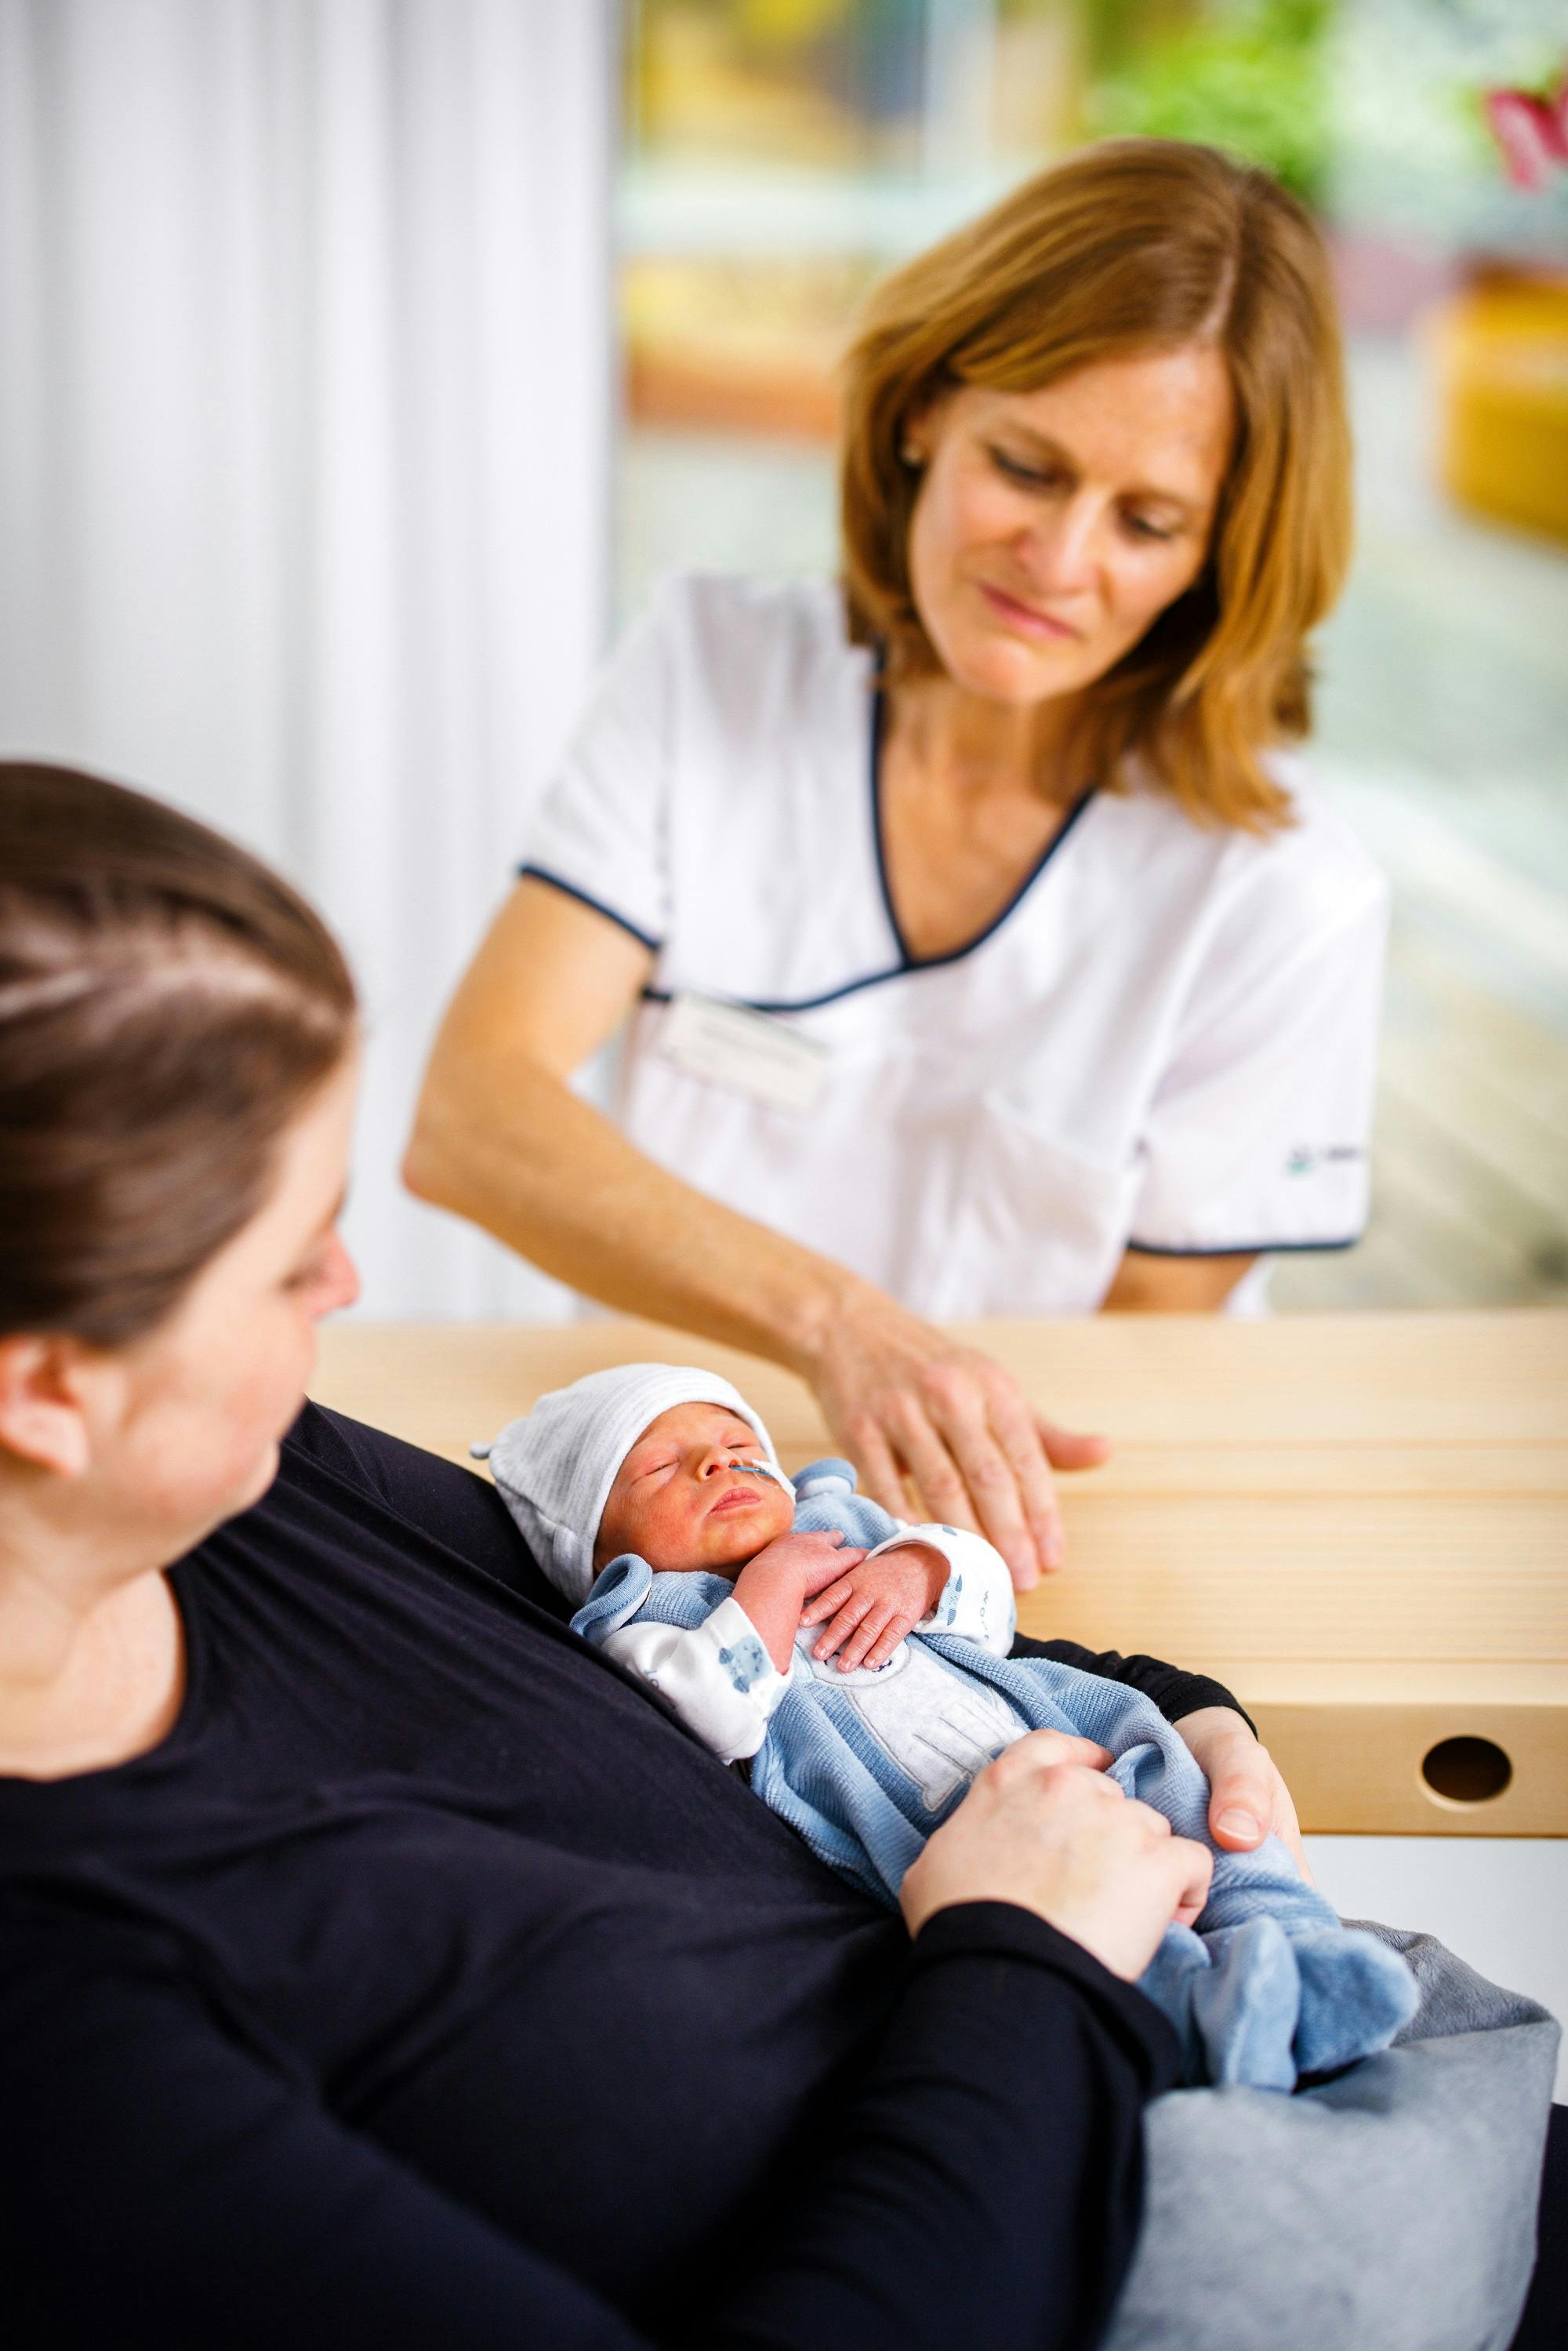 Neugeborenes auf dem Arm einer Frau mit Krankenschwester im Hintergrund.